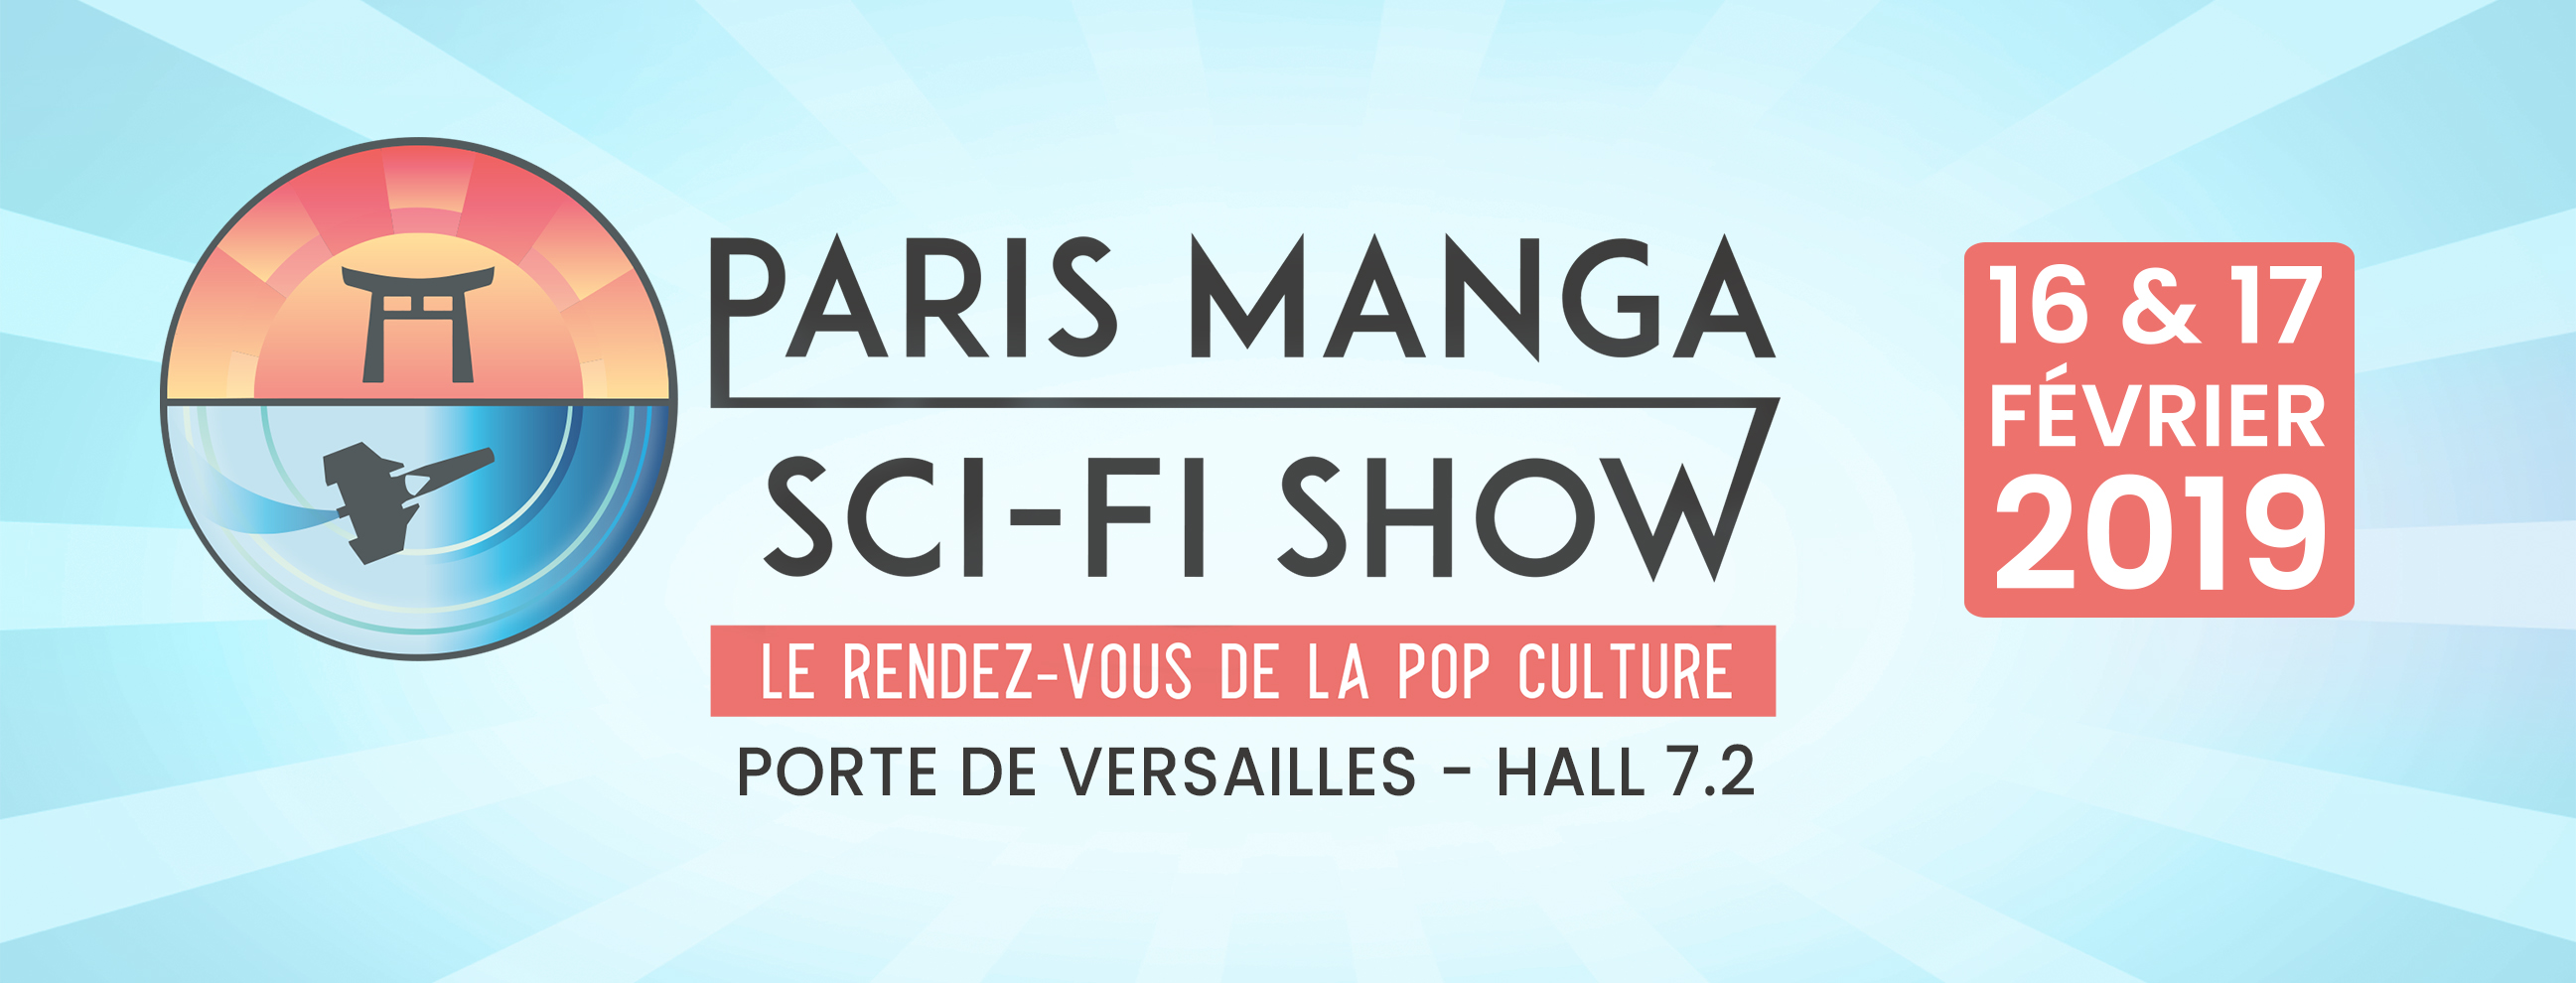 Paris Manga Sci-fi Show 2019